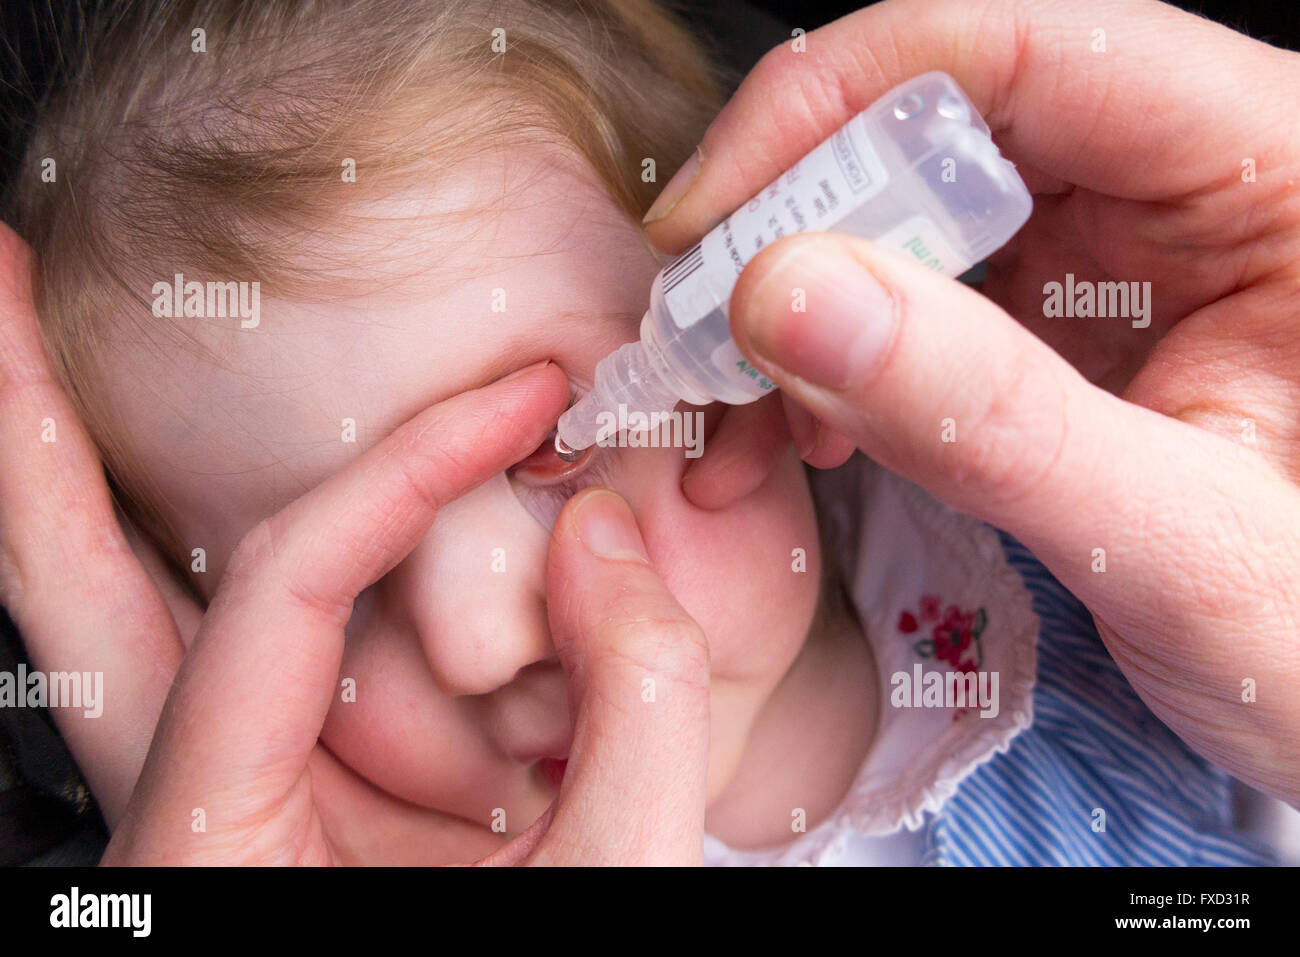 20 mesi bambino / kid bimbo baby con congiuntivite essendo dato antibiotico collirio goccia a sua mamma / madre Foto Stock